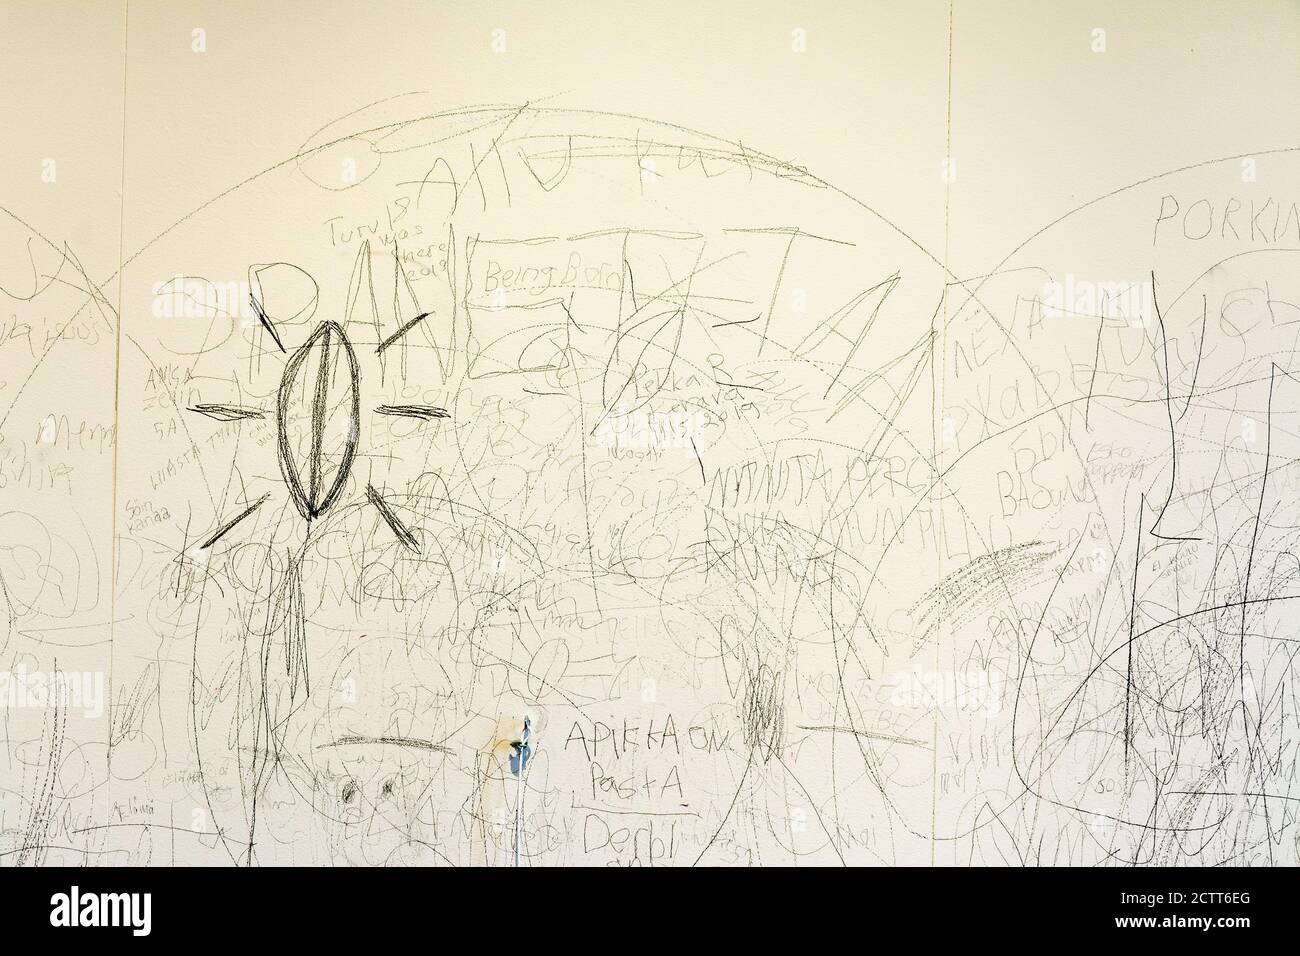 Dibujos y escritos en un muro de celdas en prisión Museo en Hämeenlinna Finlandia Foto de stock